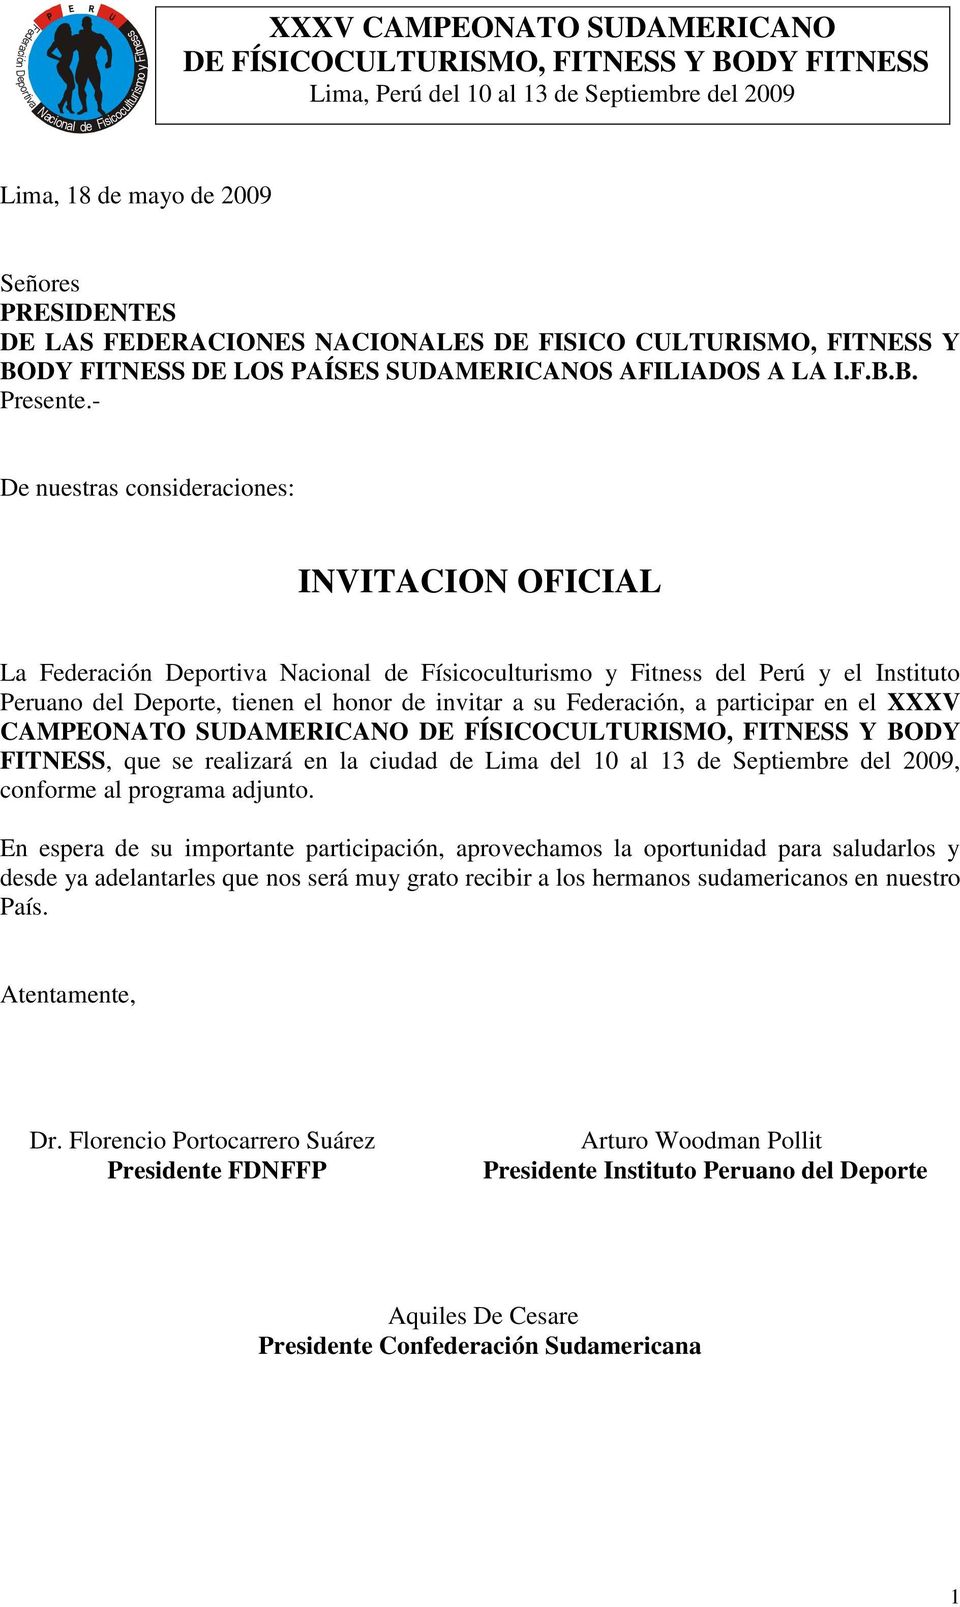 Federación, a participar en el XXXV CAMPEONATO SUDAMERICANO DE FÍSICOCULTURISMO, FITNESS Y BODY FITNESS, que se realizará en la ciudad de Lima del 10 al 13 de Septiembre del 2009, conforme al